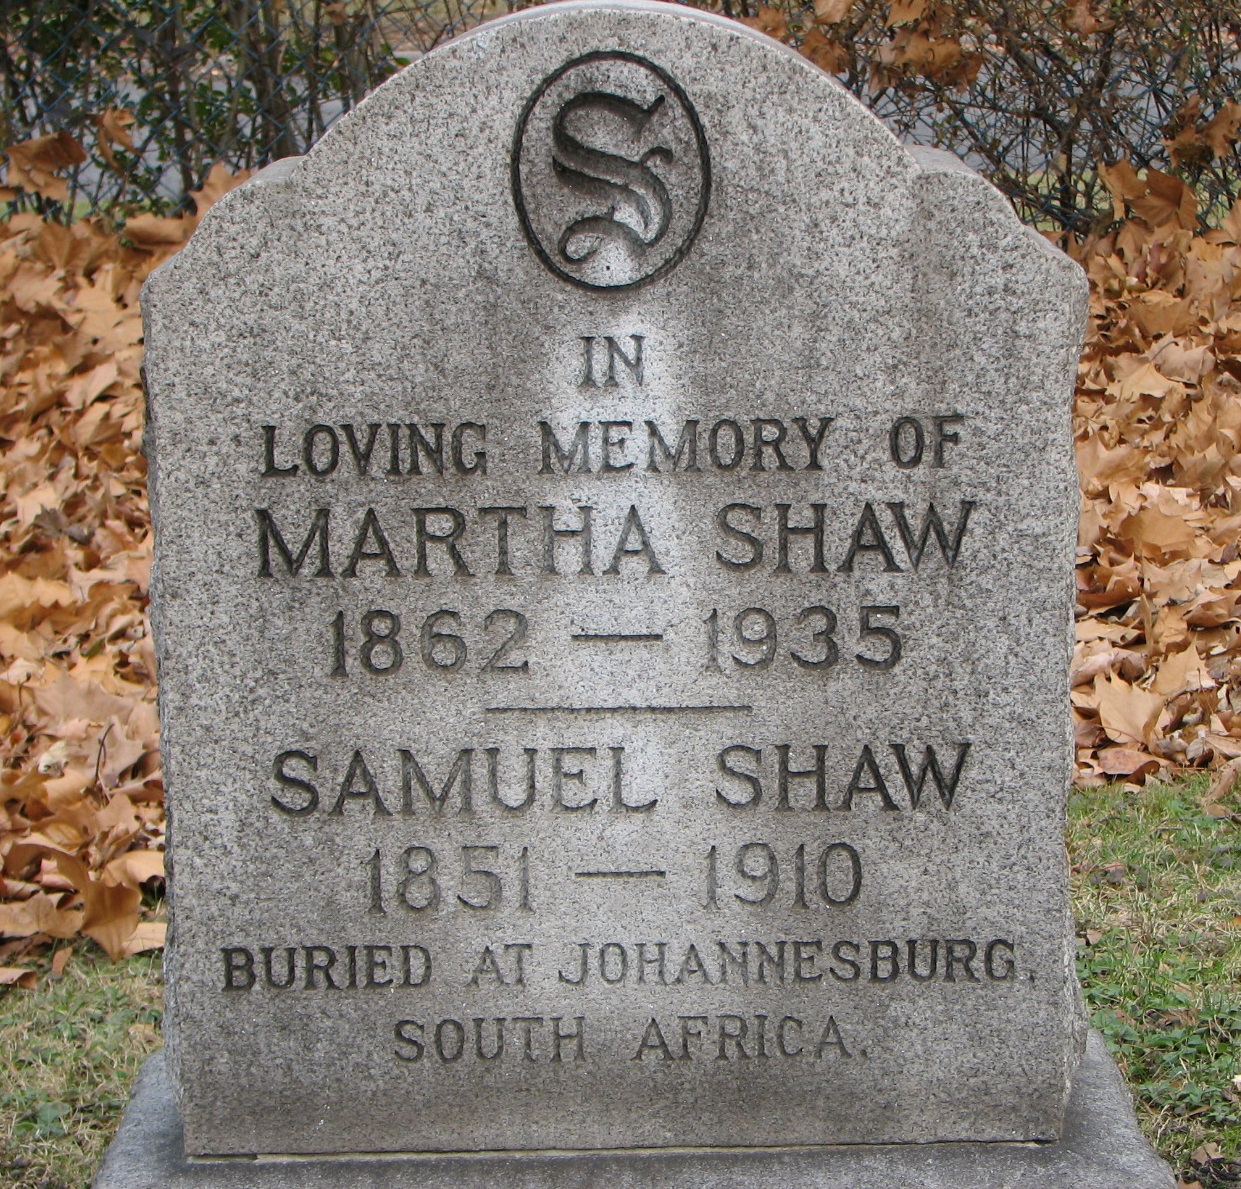 Martha SHAW 1862-1935 _ Samuel Shaw 1851-1910